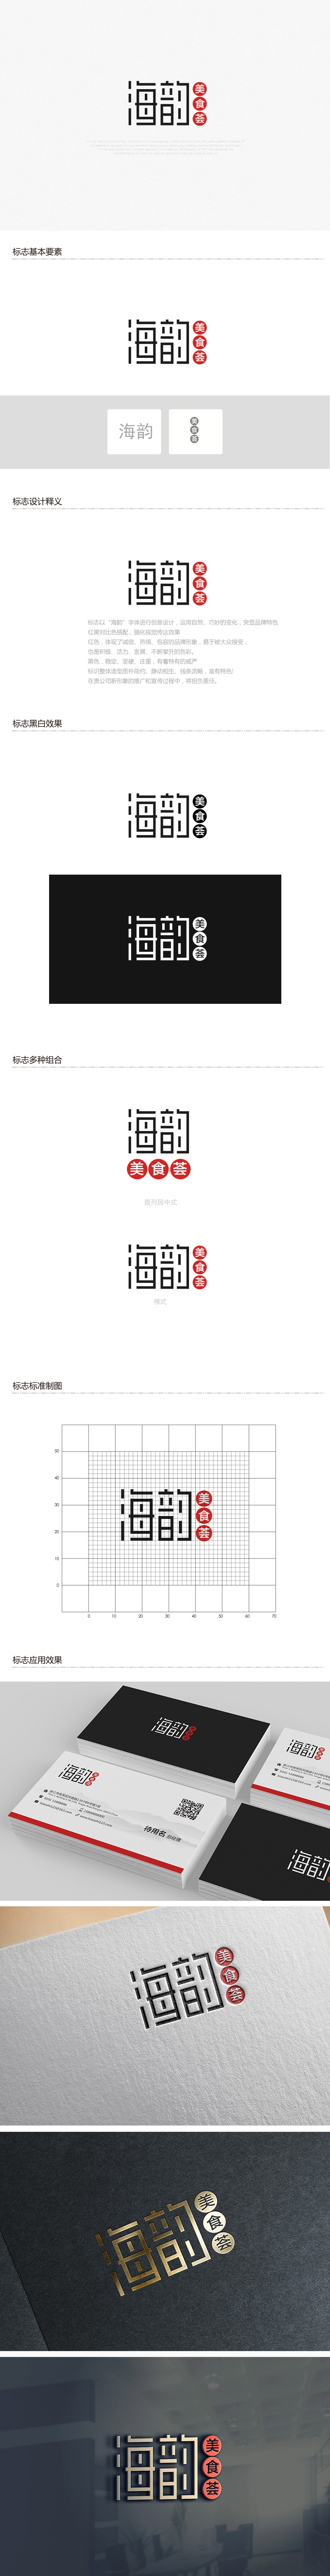 吴晓伟的海韵美食荟logo设计